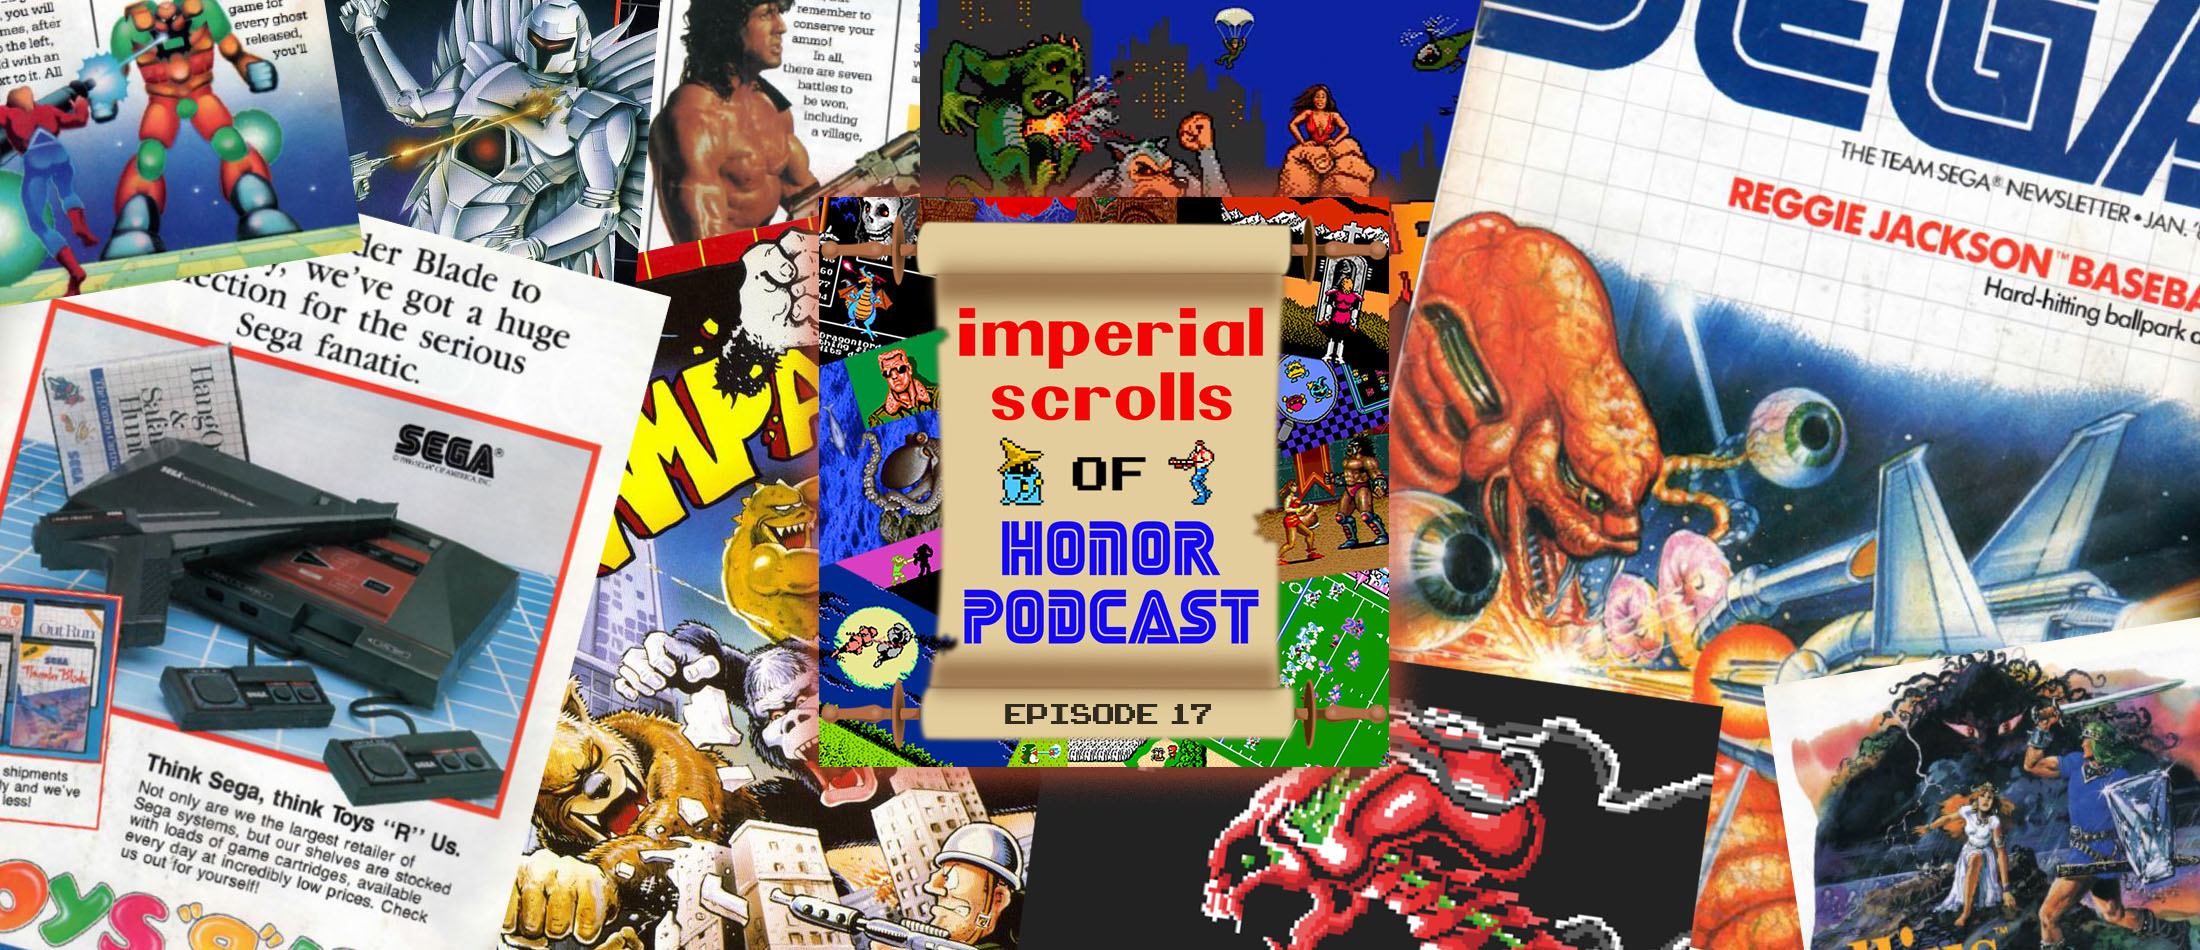 Imperial Scrolls of Honor Podcast - Episode 17 - Team Sega Newsletter #5